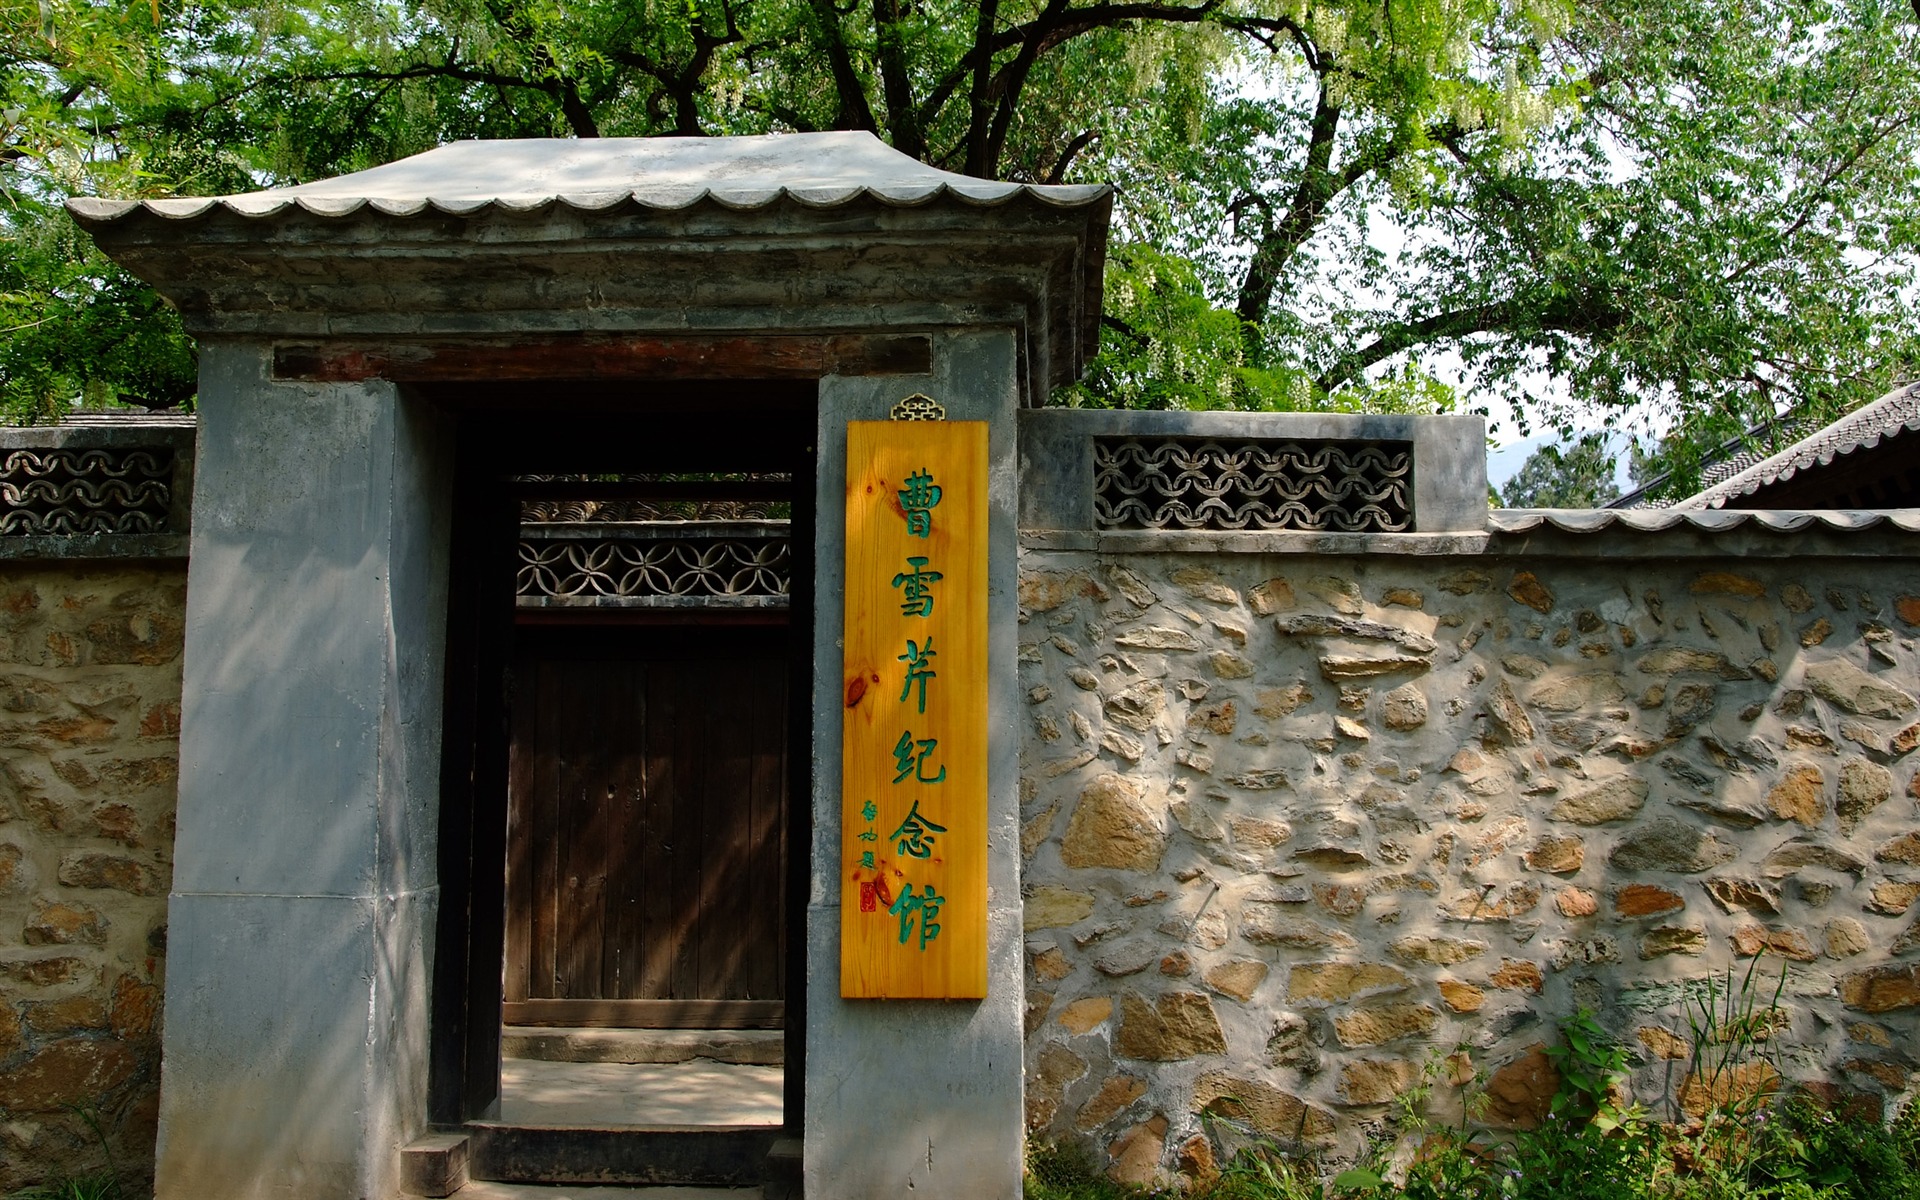 Xiangshan jardín principios del verano (obras barras de refuerzo) #17 - 1920x1200